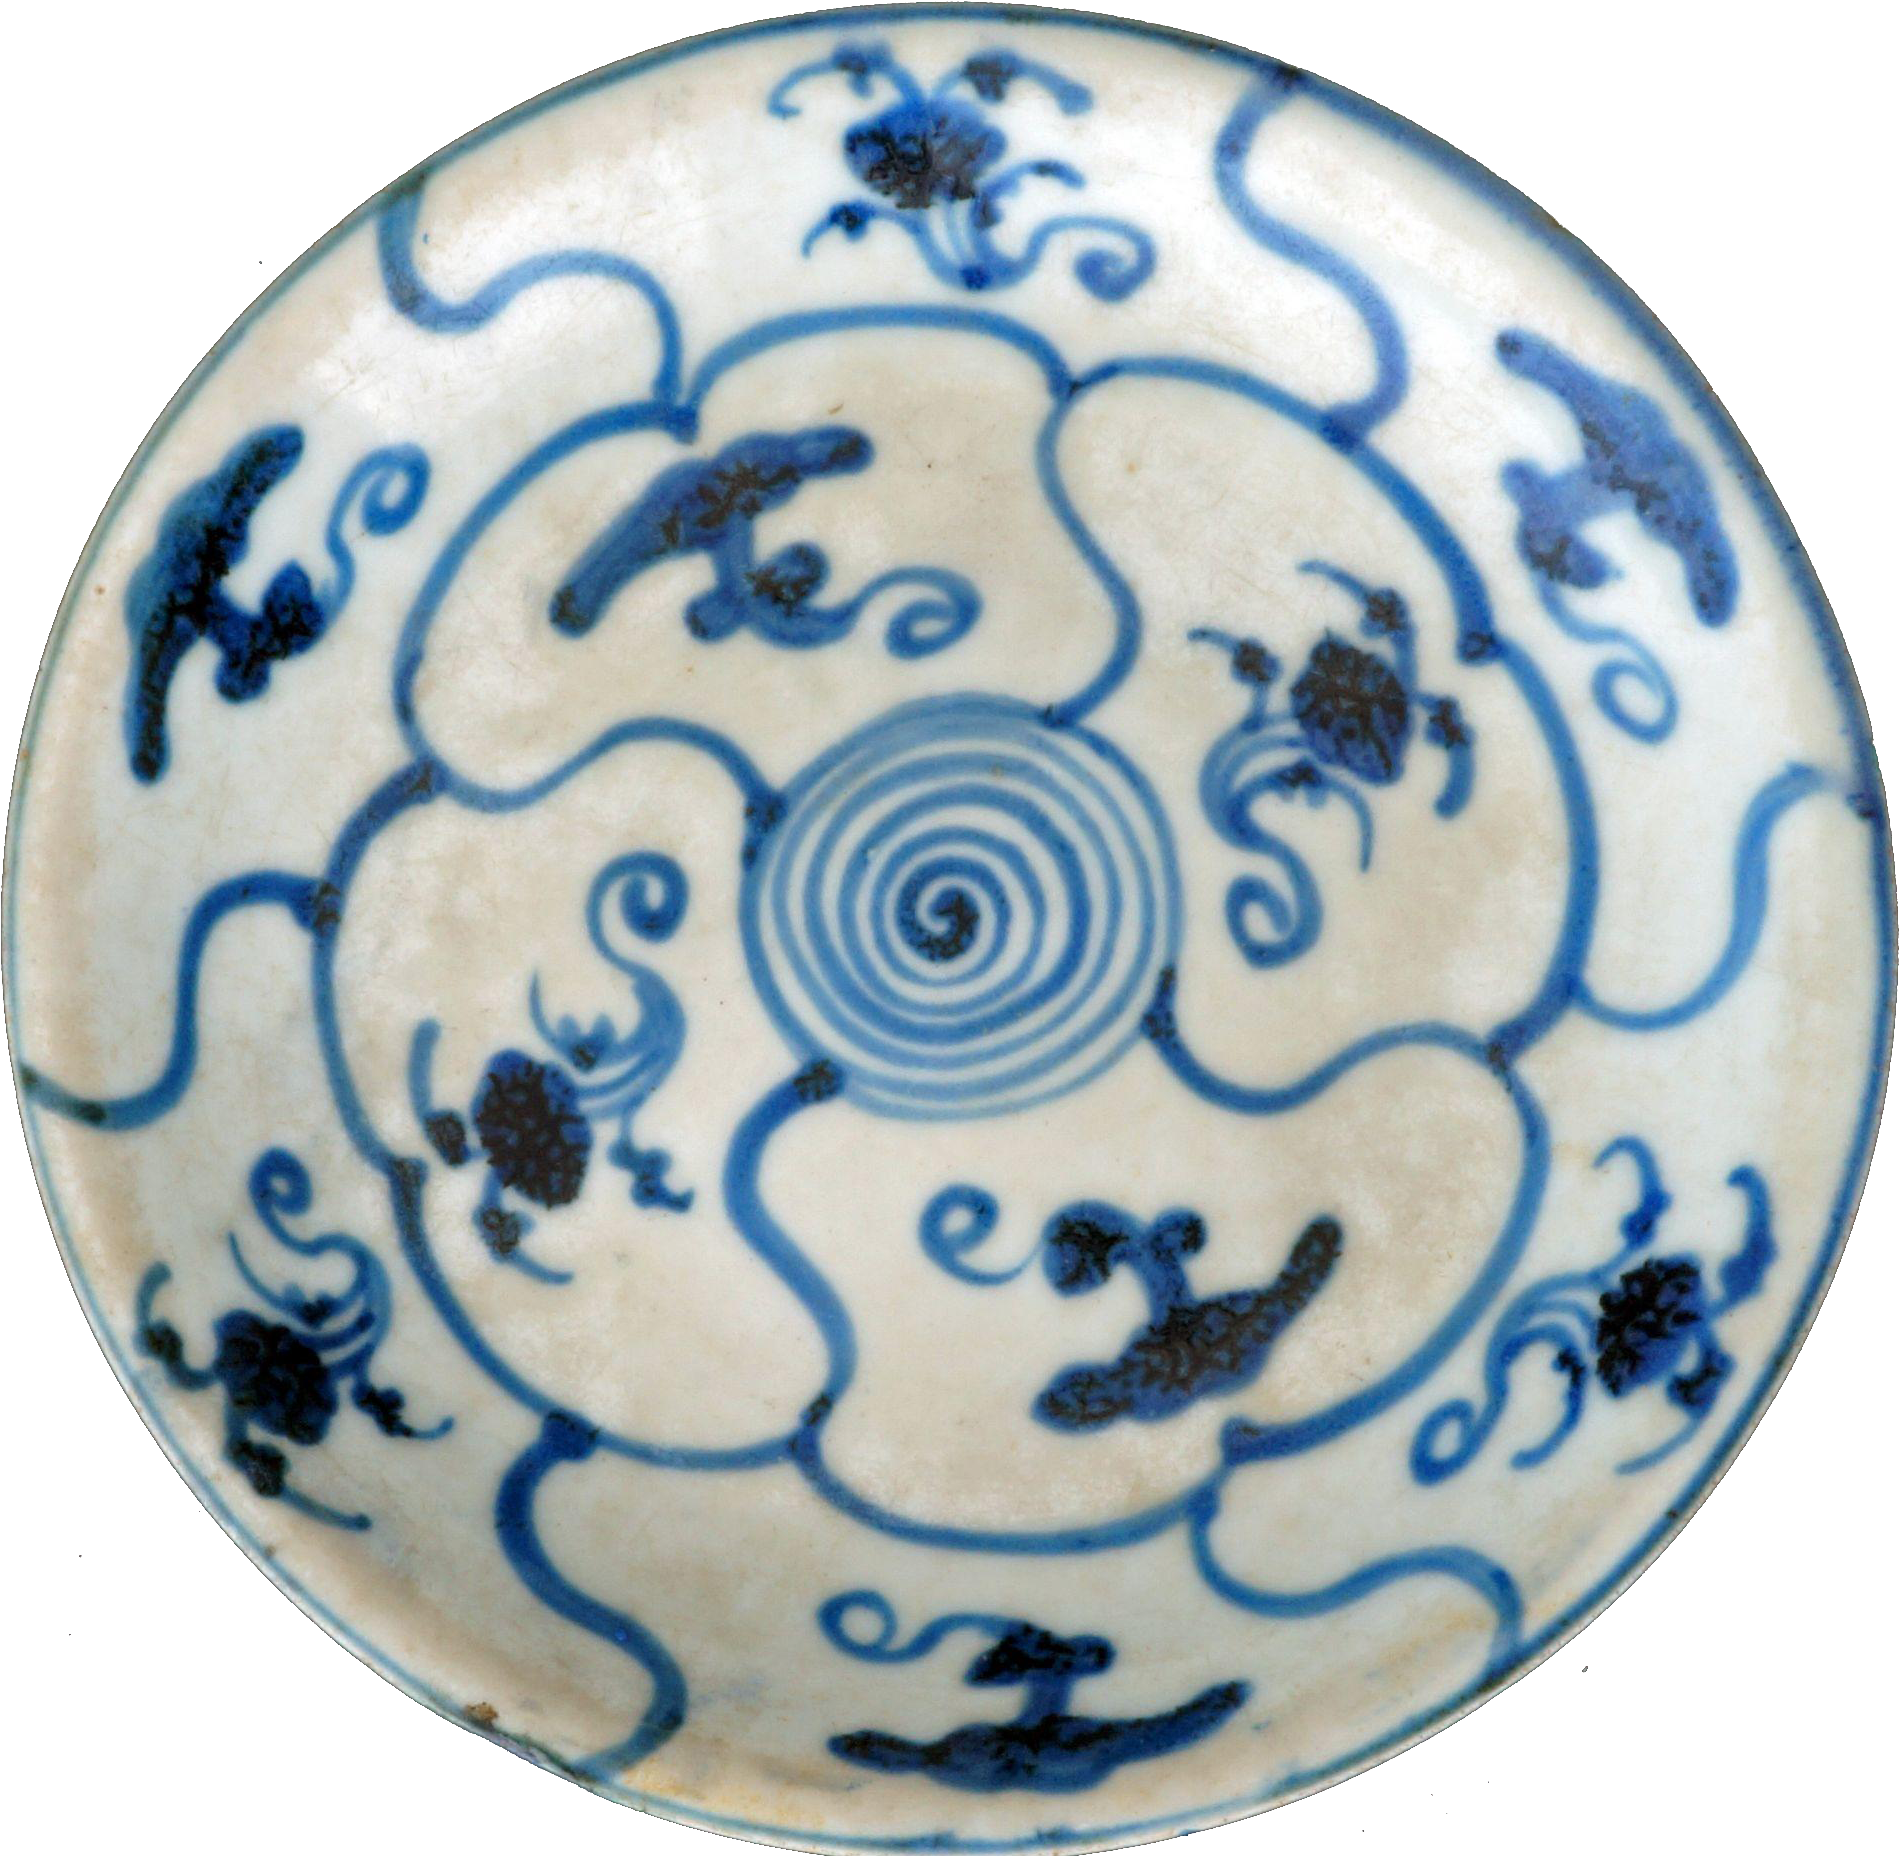 Porcelana da Dinastia Ming da China, pratos de porcelana azul e branca